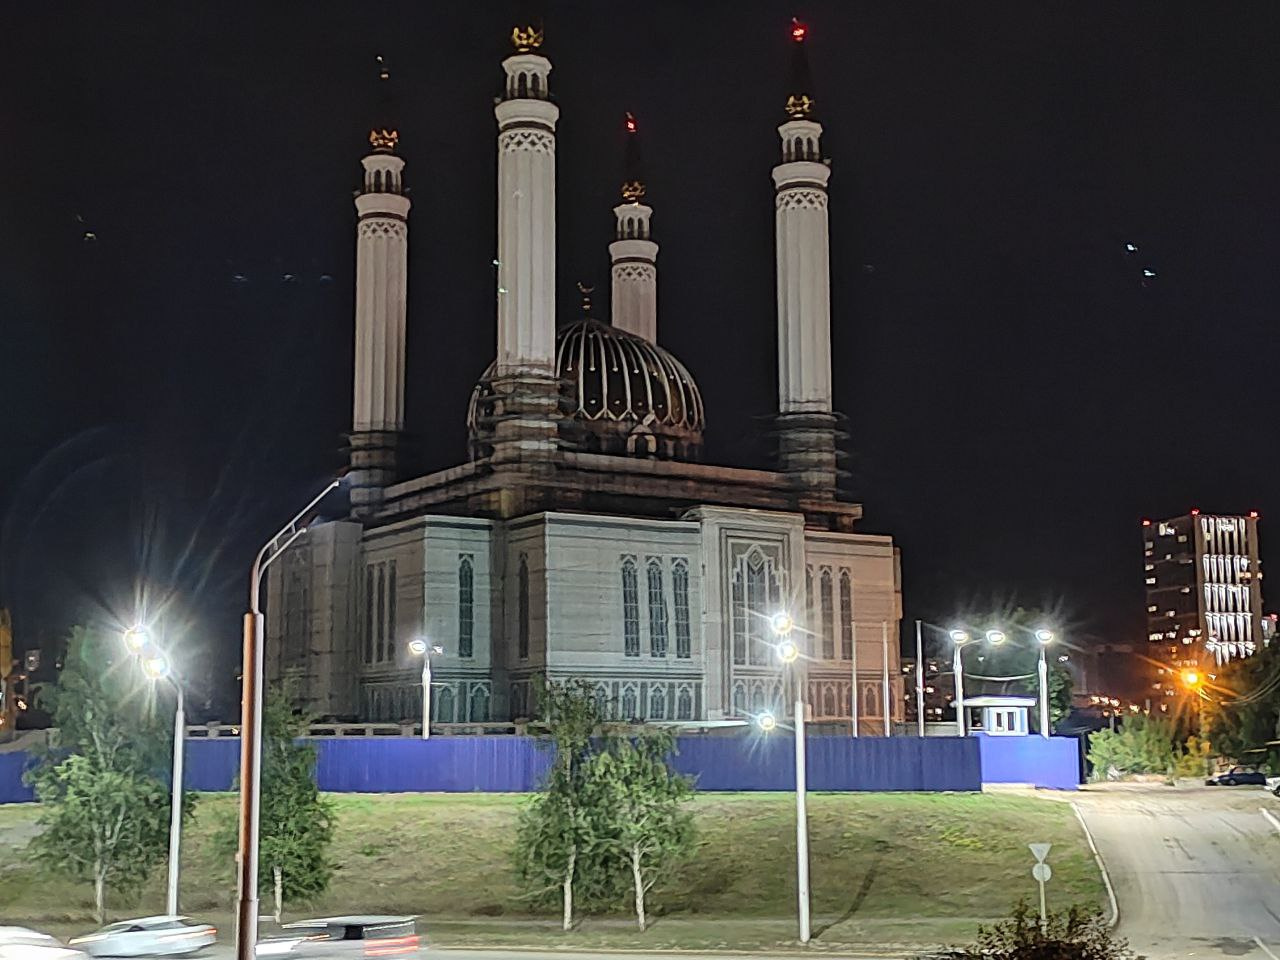 Про темноту. Очень красивая мечеть «Ар-Рахим». Хоть она пока и строится, но прям уже сейчас просится ее подсветка